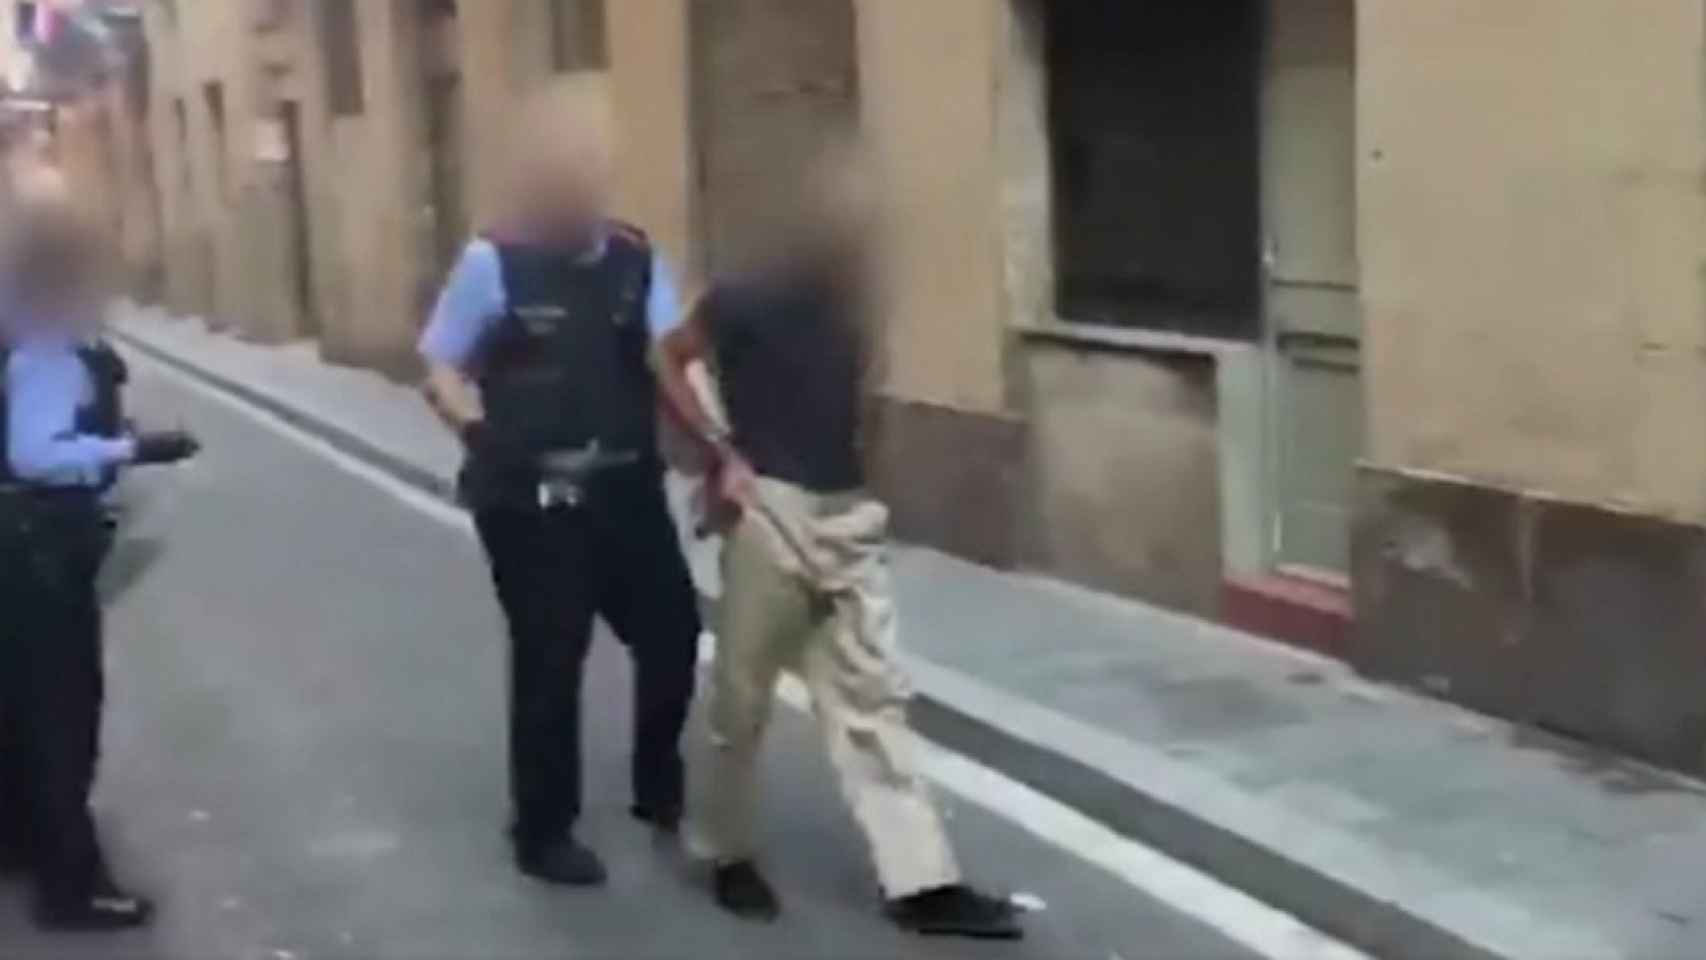 Los mossos detienen a un presunto asesor sexual / Mossos d'Esquadra